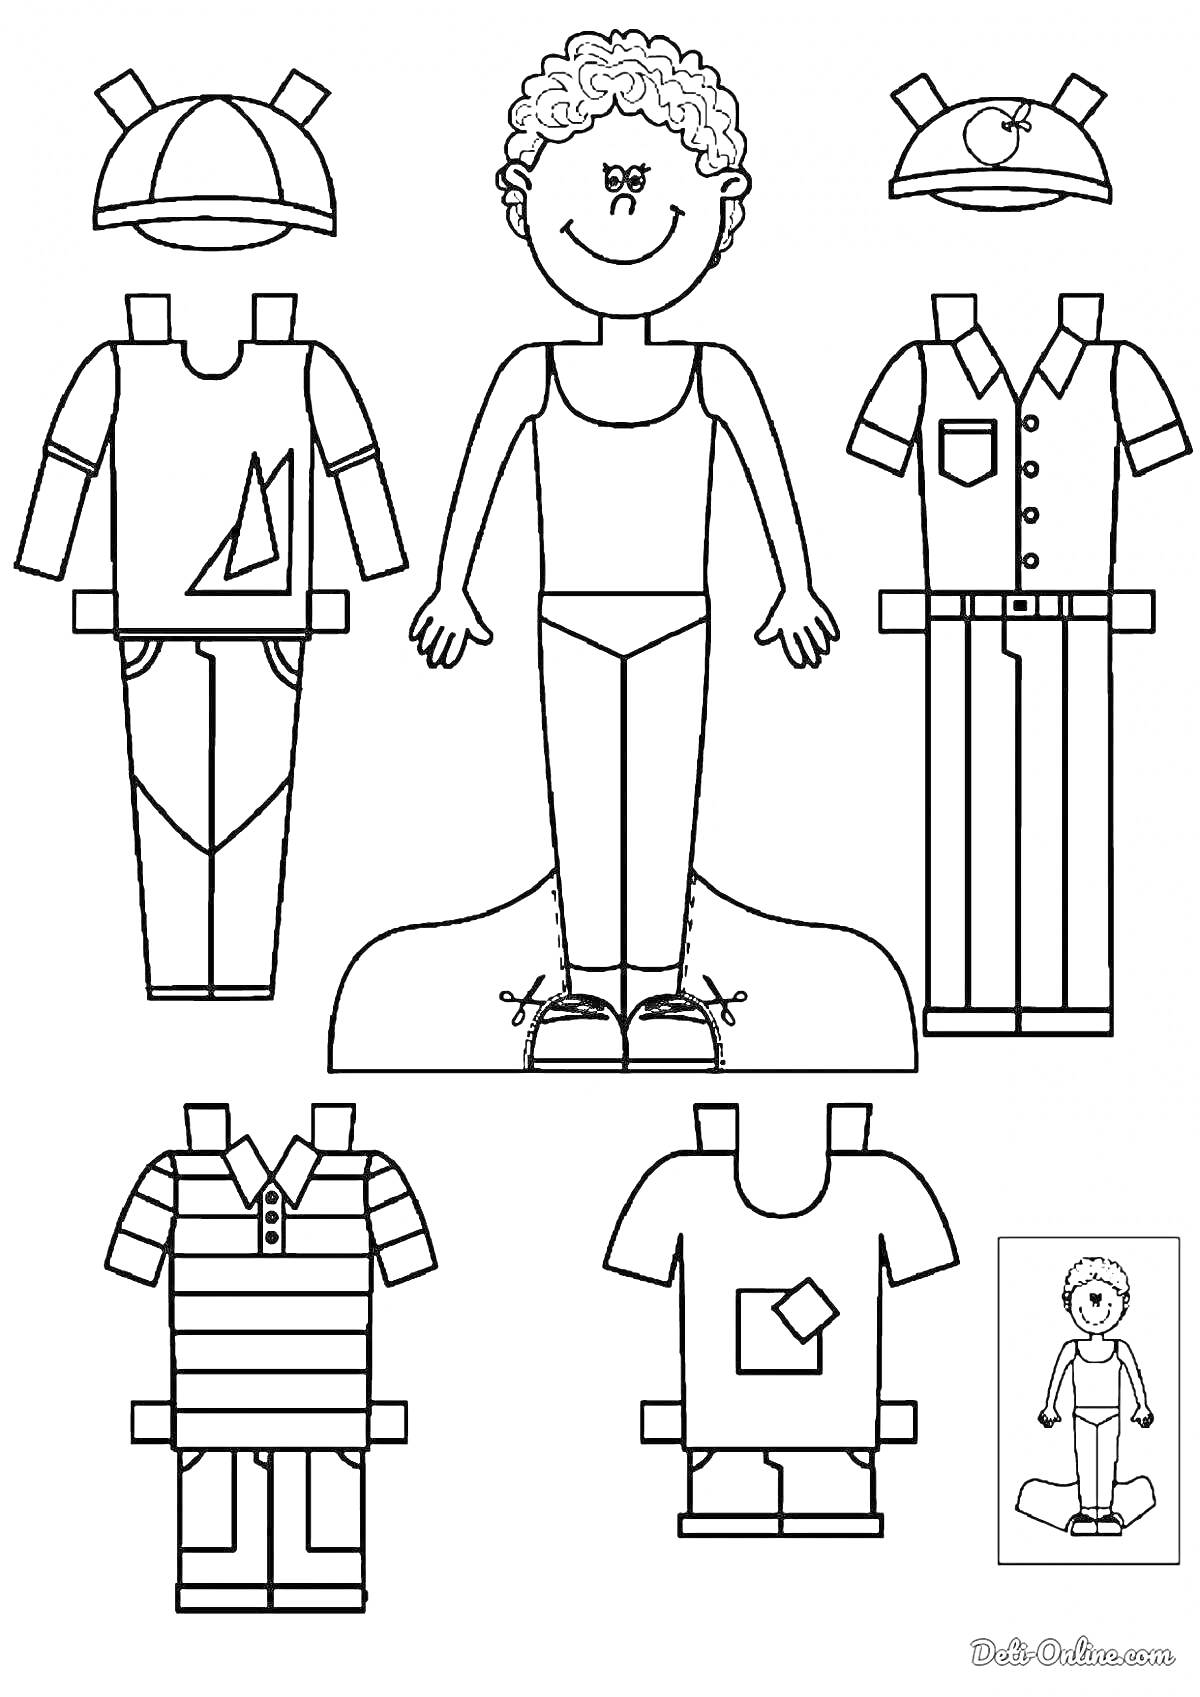 Раскраска Мальчик с одеждой для вырезания: футболка с кармашком, футболка с корабликом, полосатая футболка с шортами, рубашка с длинными штанами, бейсболка с логотипом, бейсболка с звездочкой